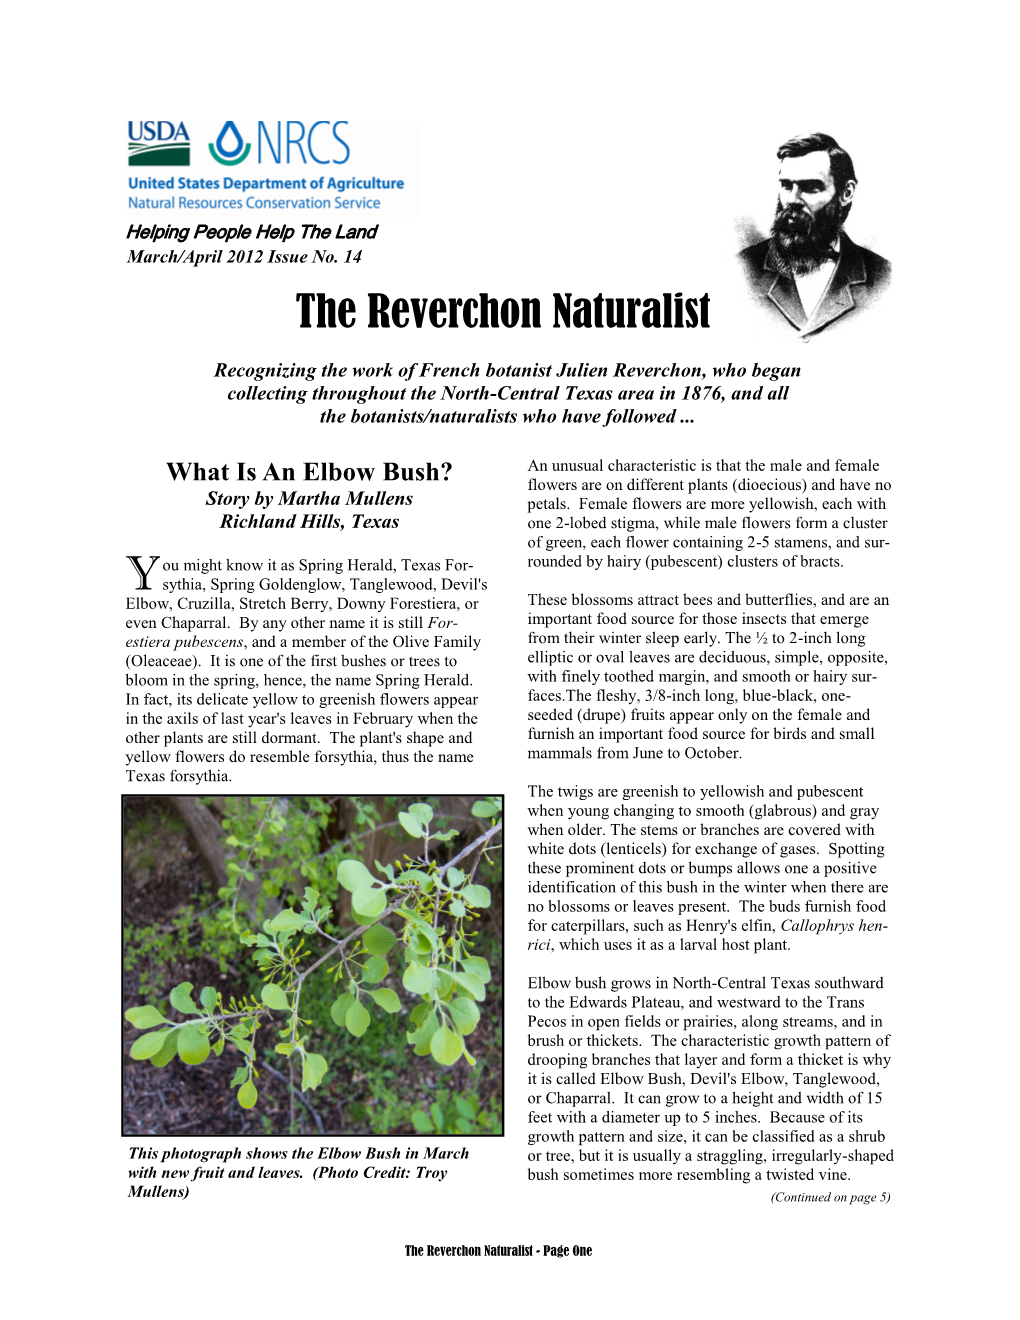 The Reverchon Naturalist